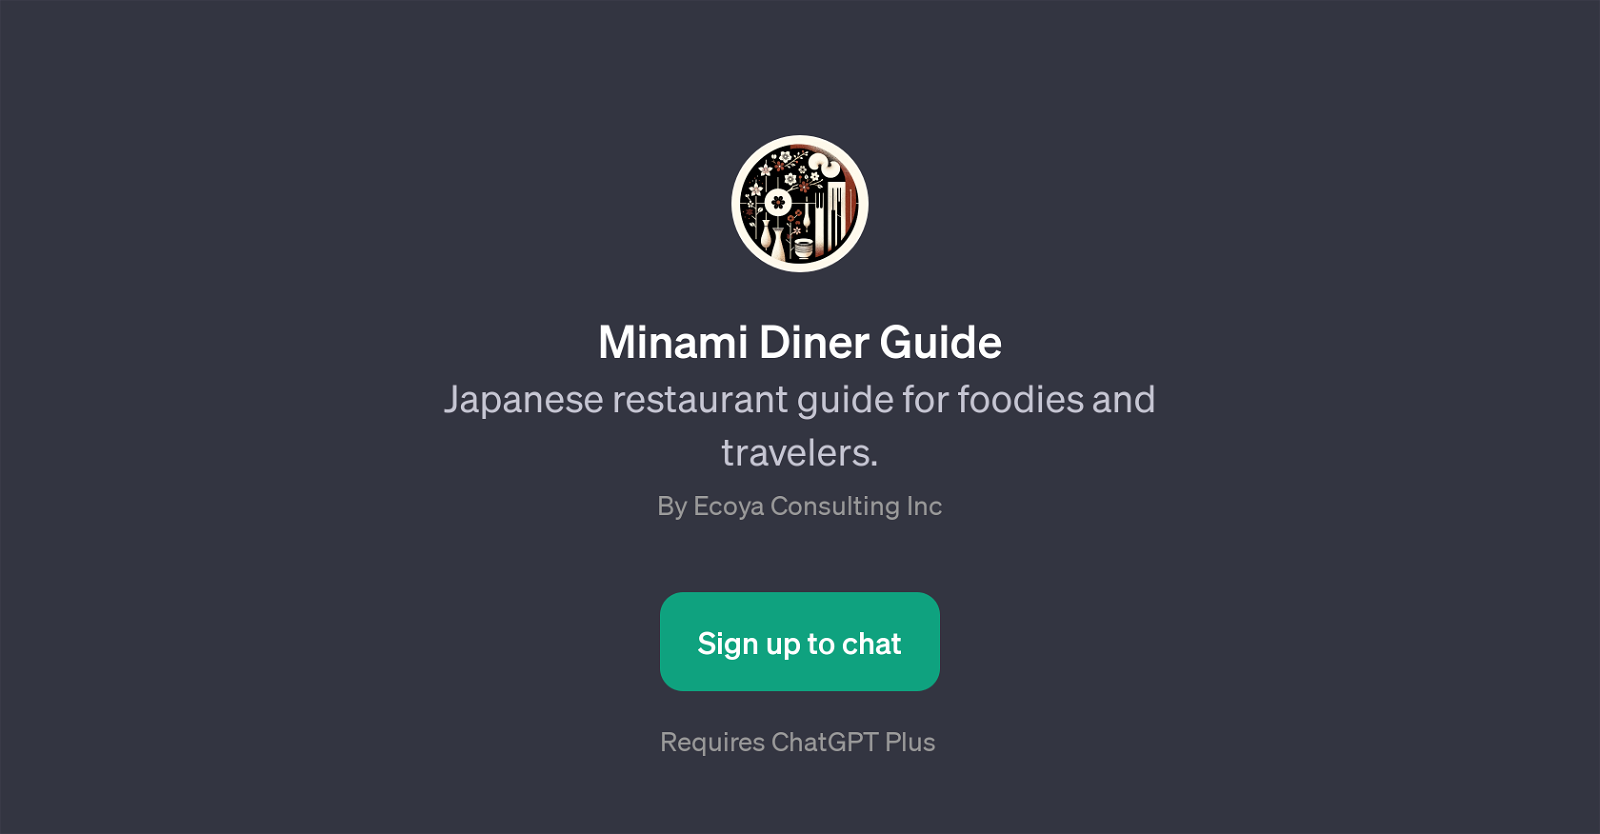 Minami Diner Guide website